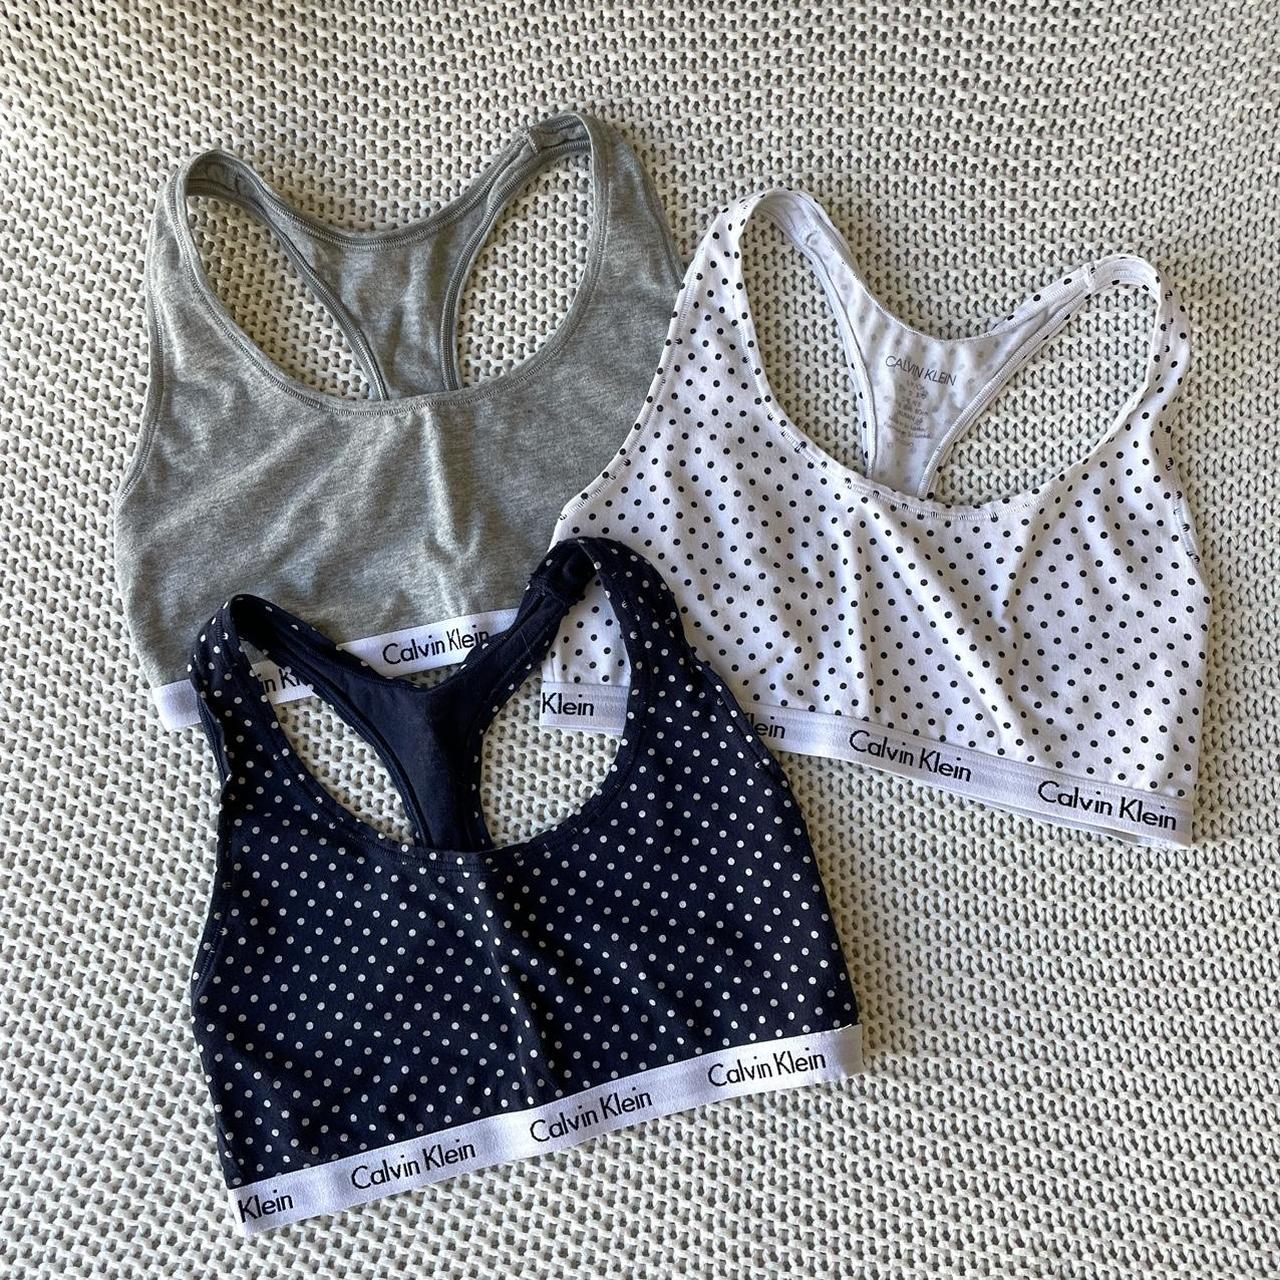 Calvin Klein 3 piece lingerie set. 34B/ S/M. - Depop